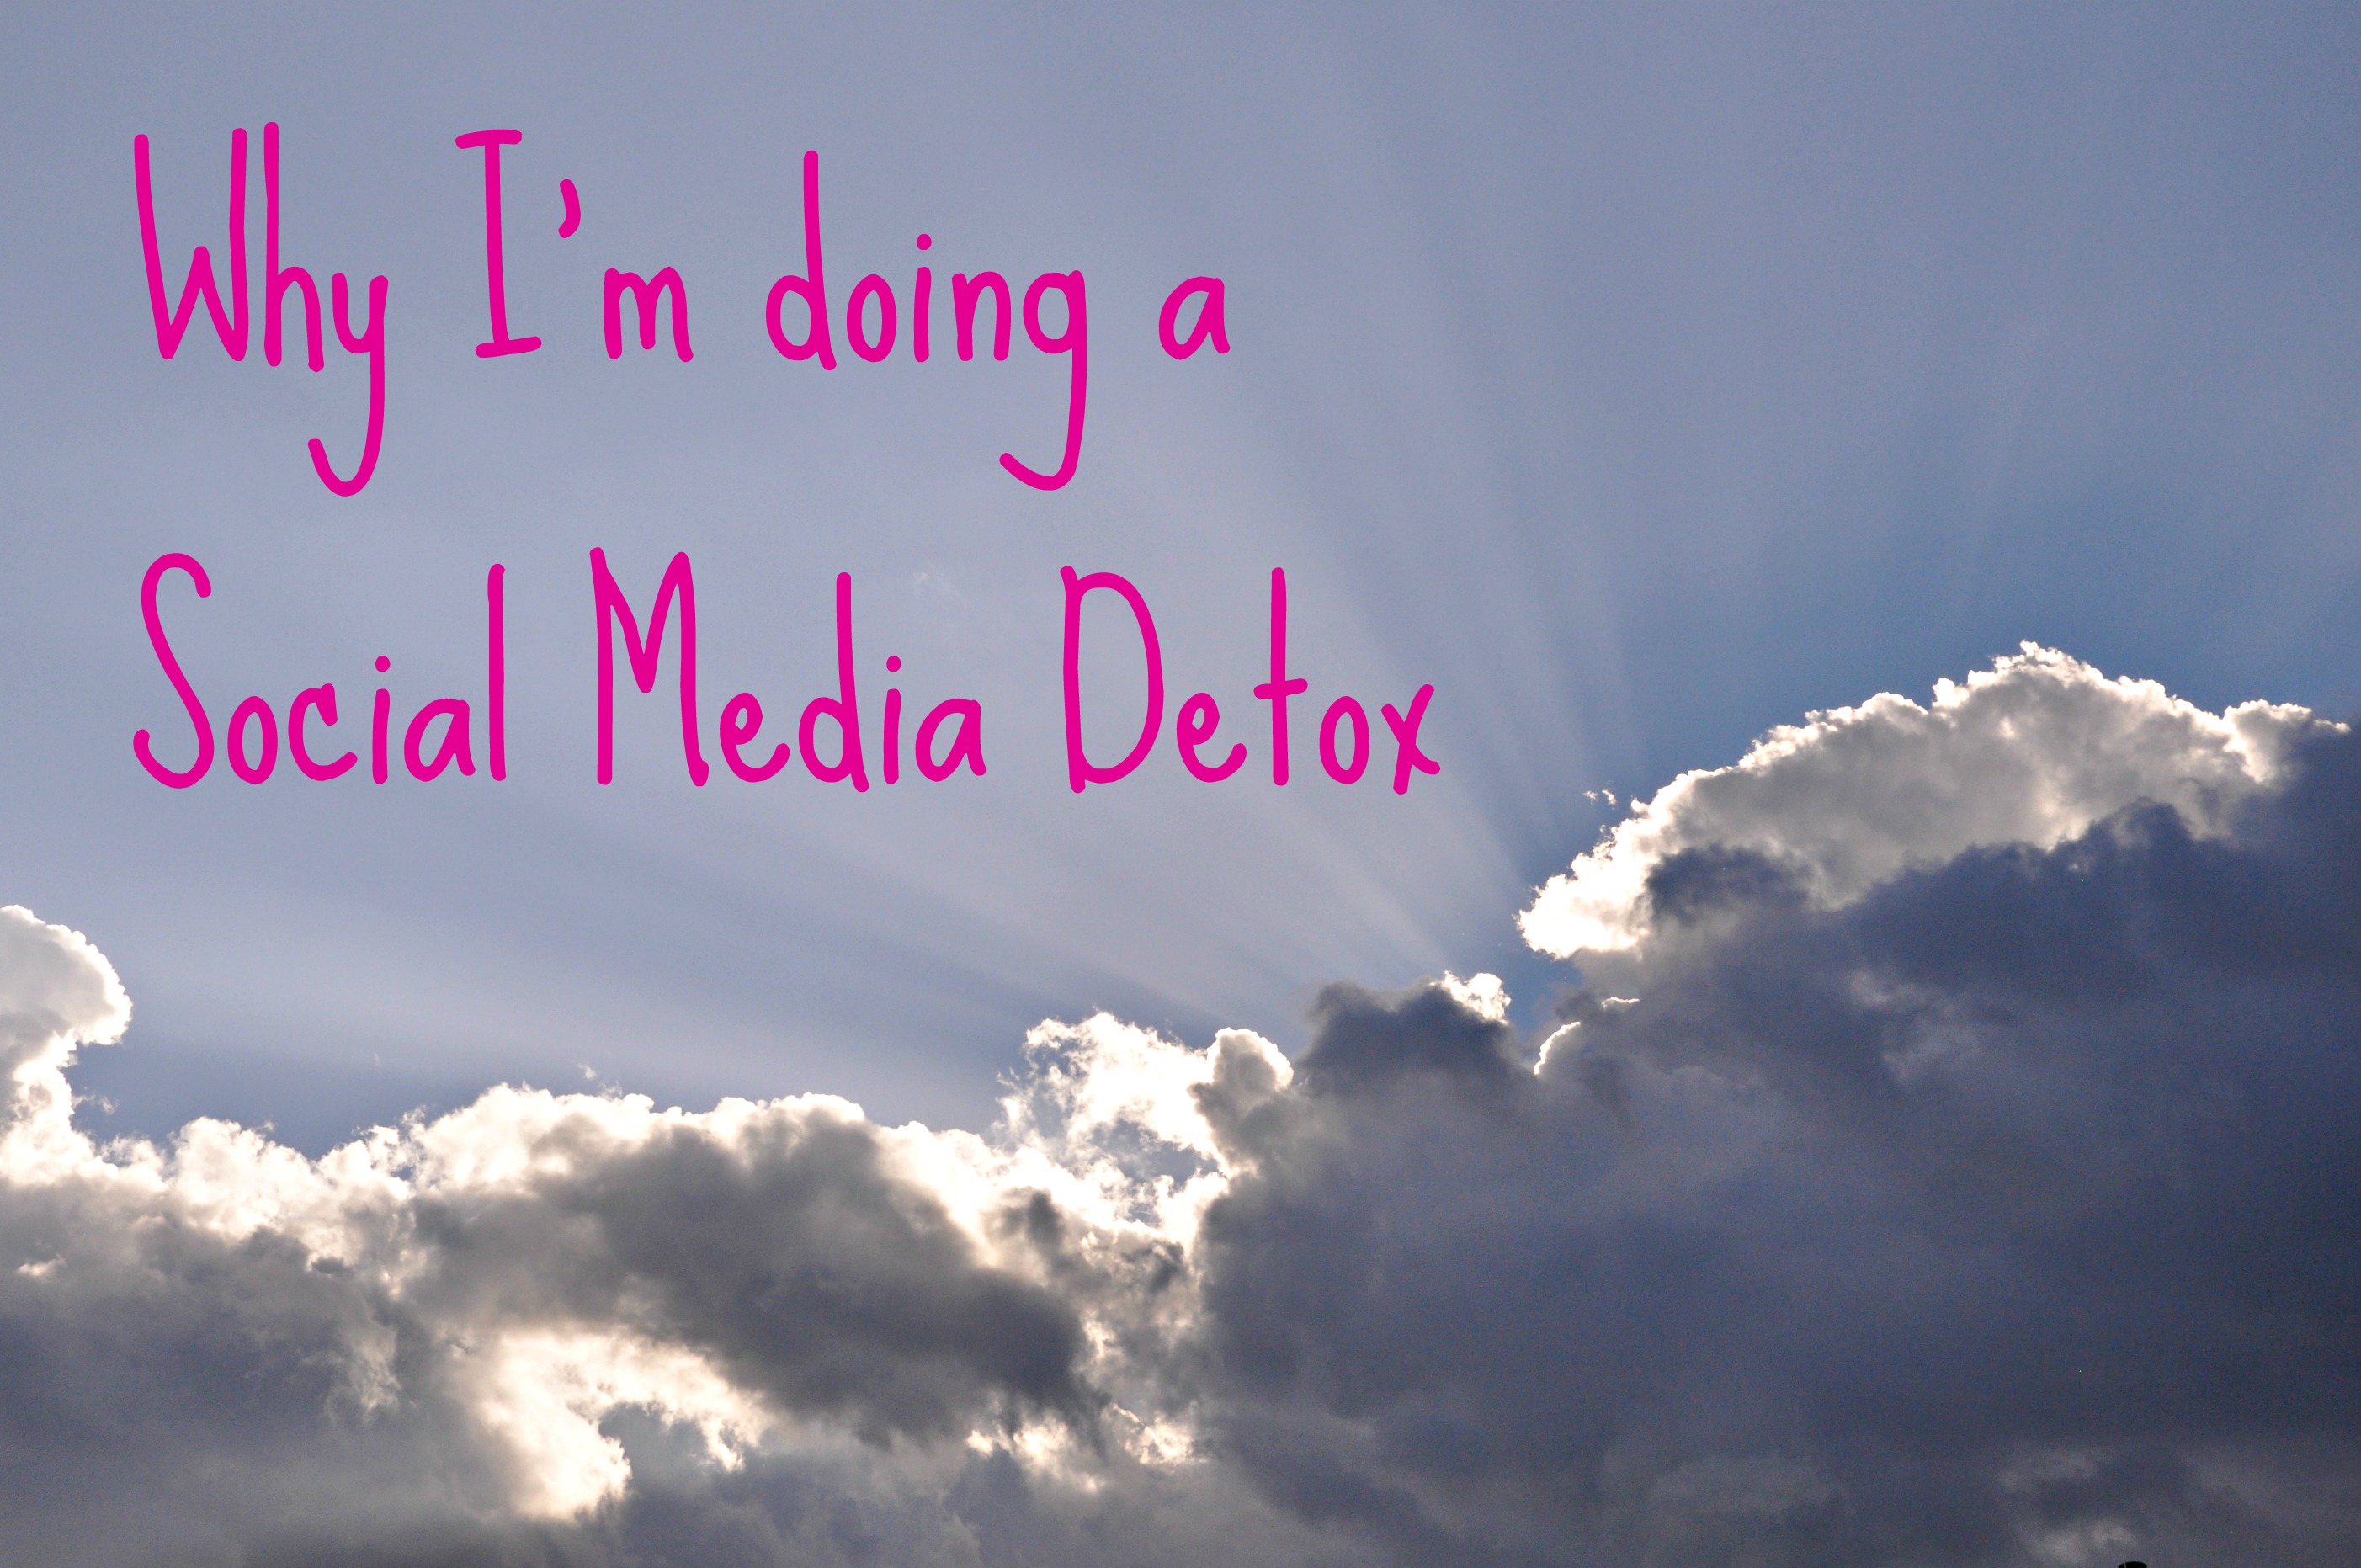 Detox social media